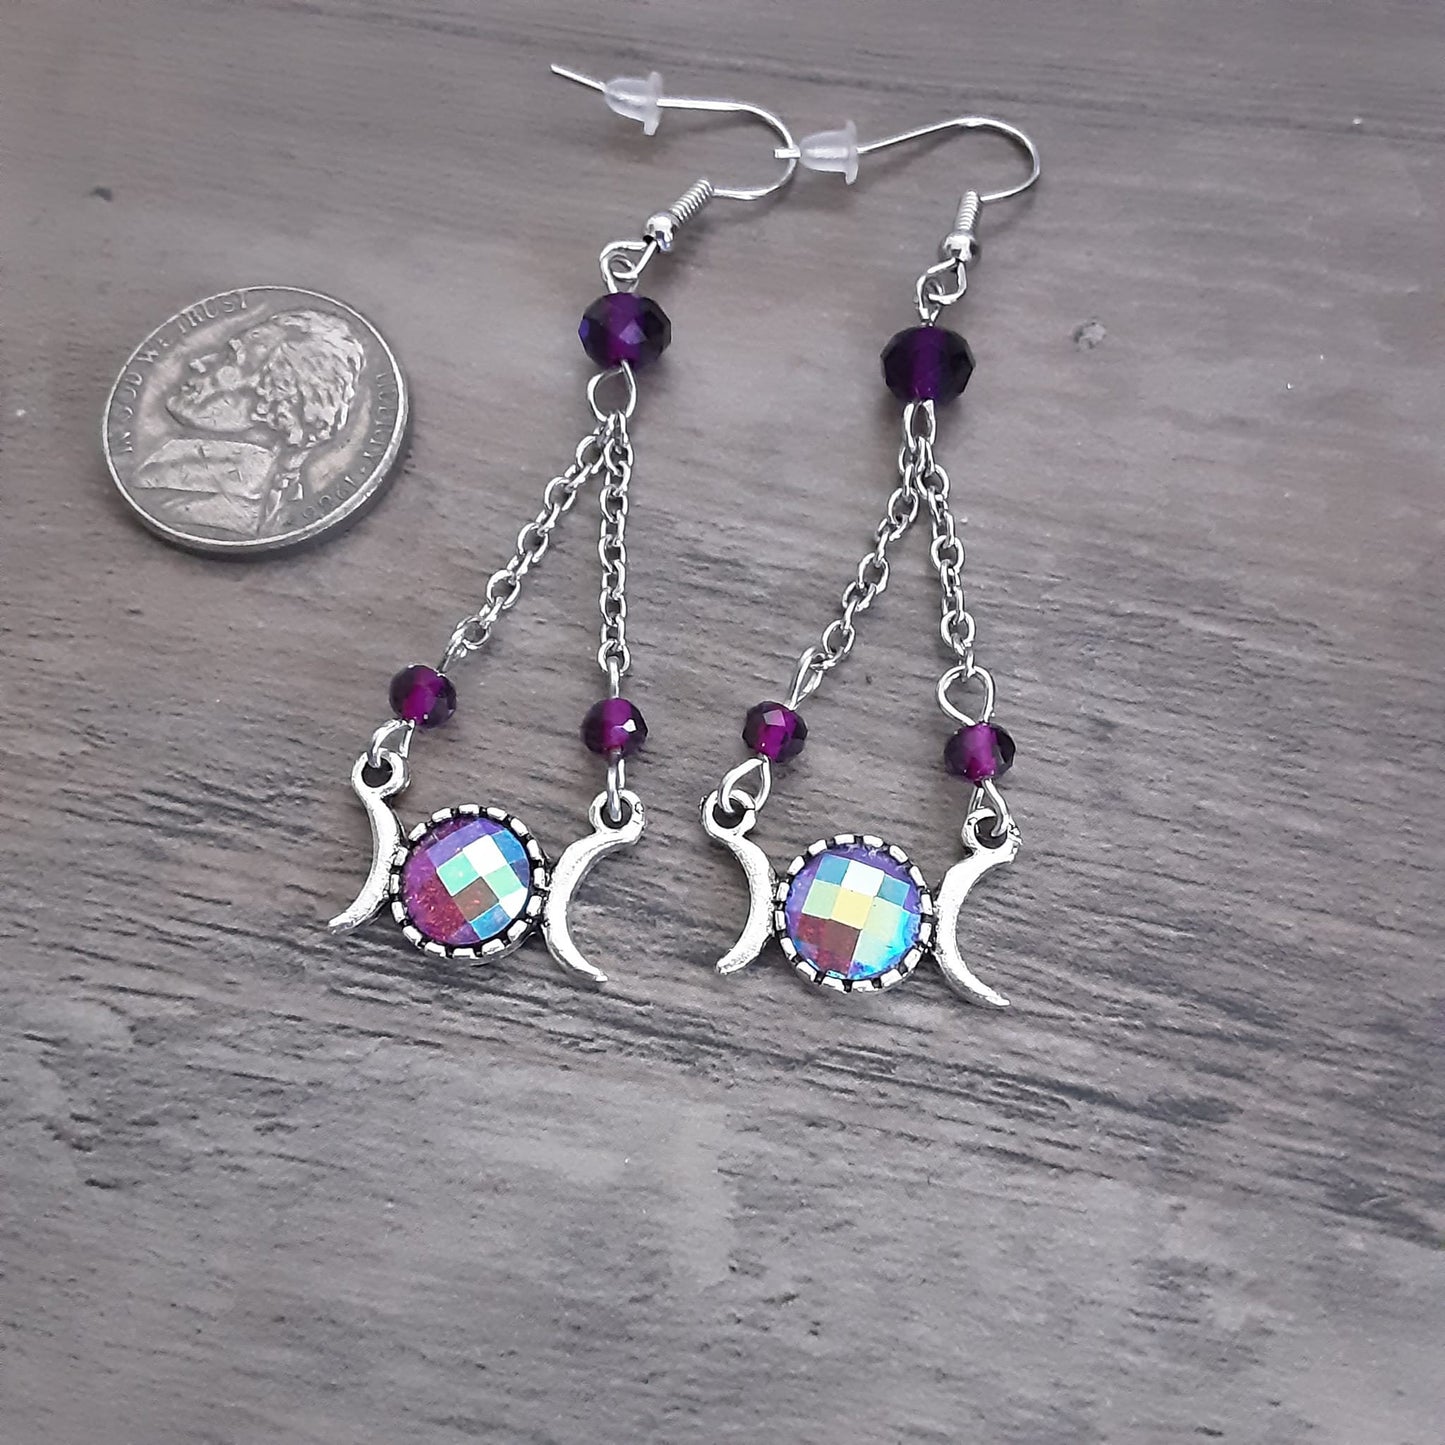 Triple Moon Goddess AB Purple Dangle Chandelier Earrings- One of a kind